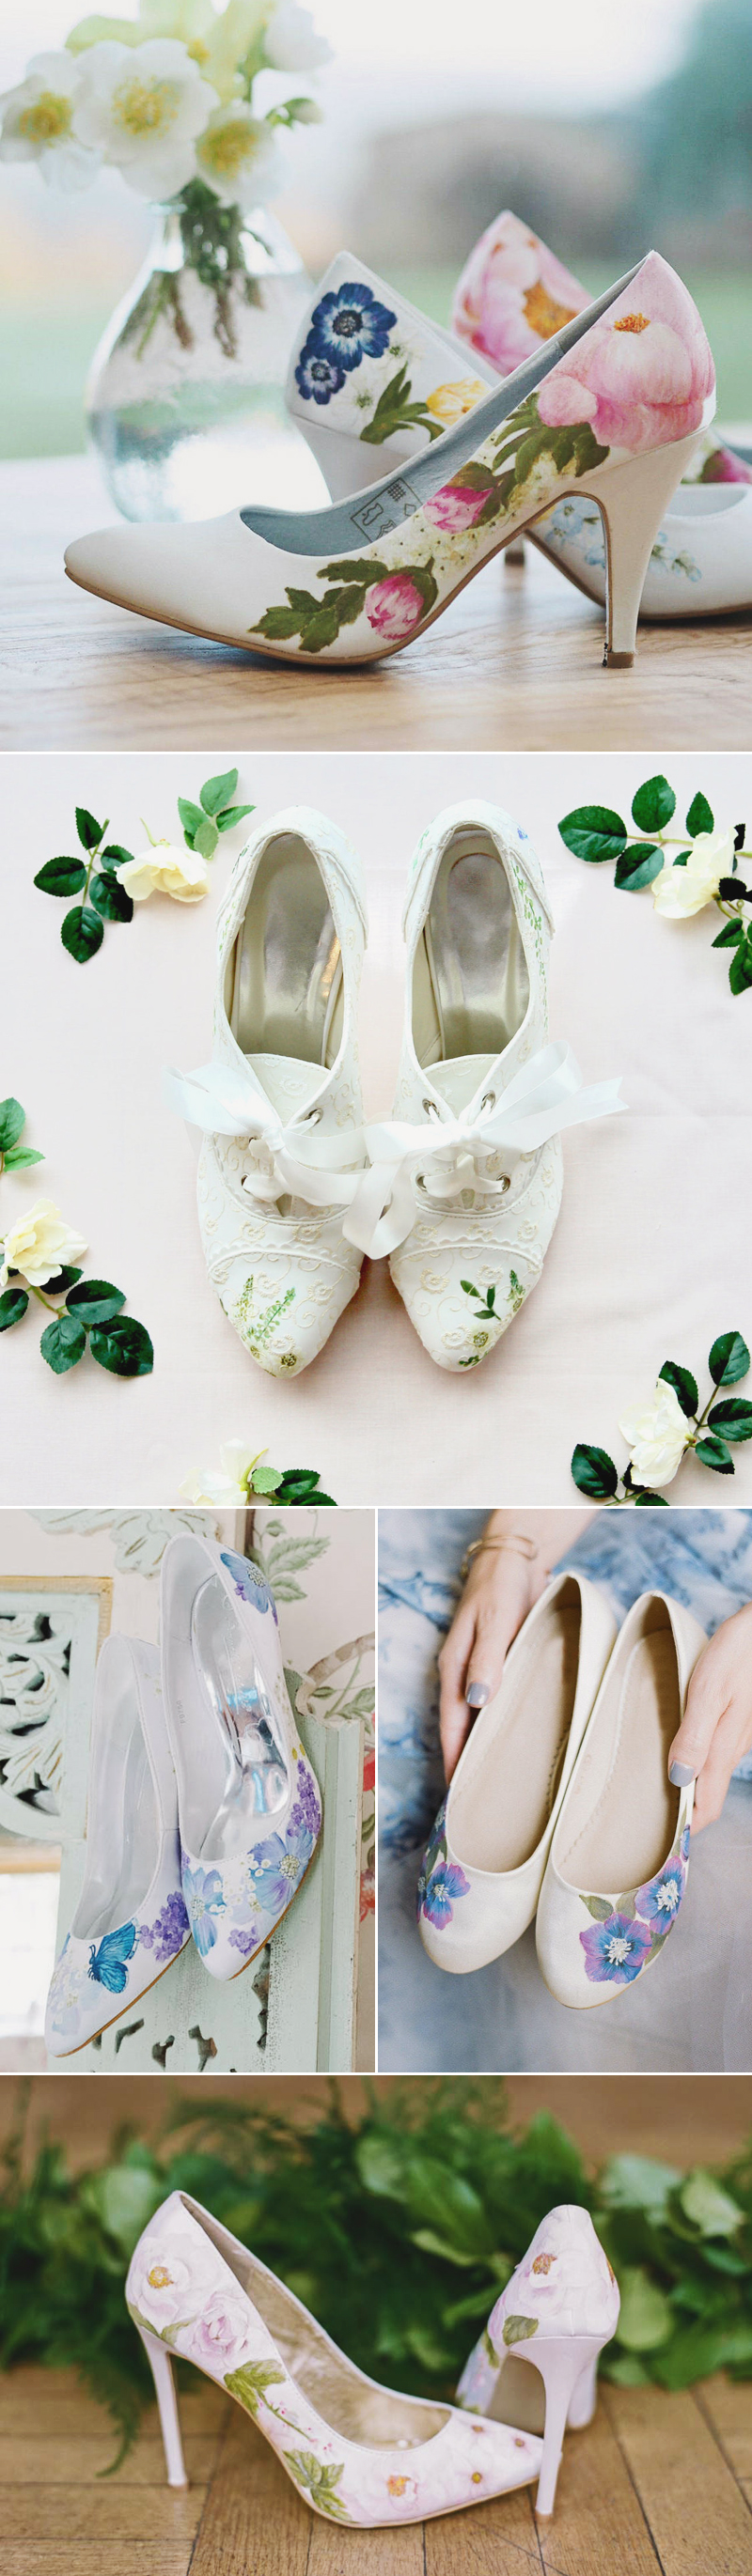 customized bridal shoes